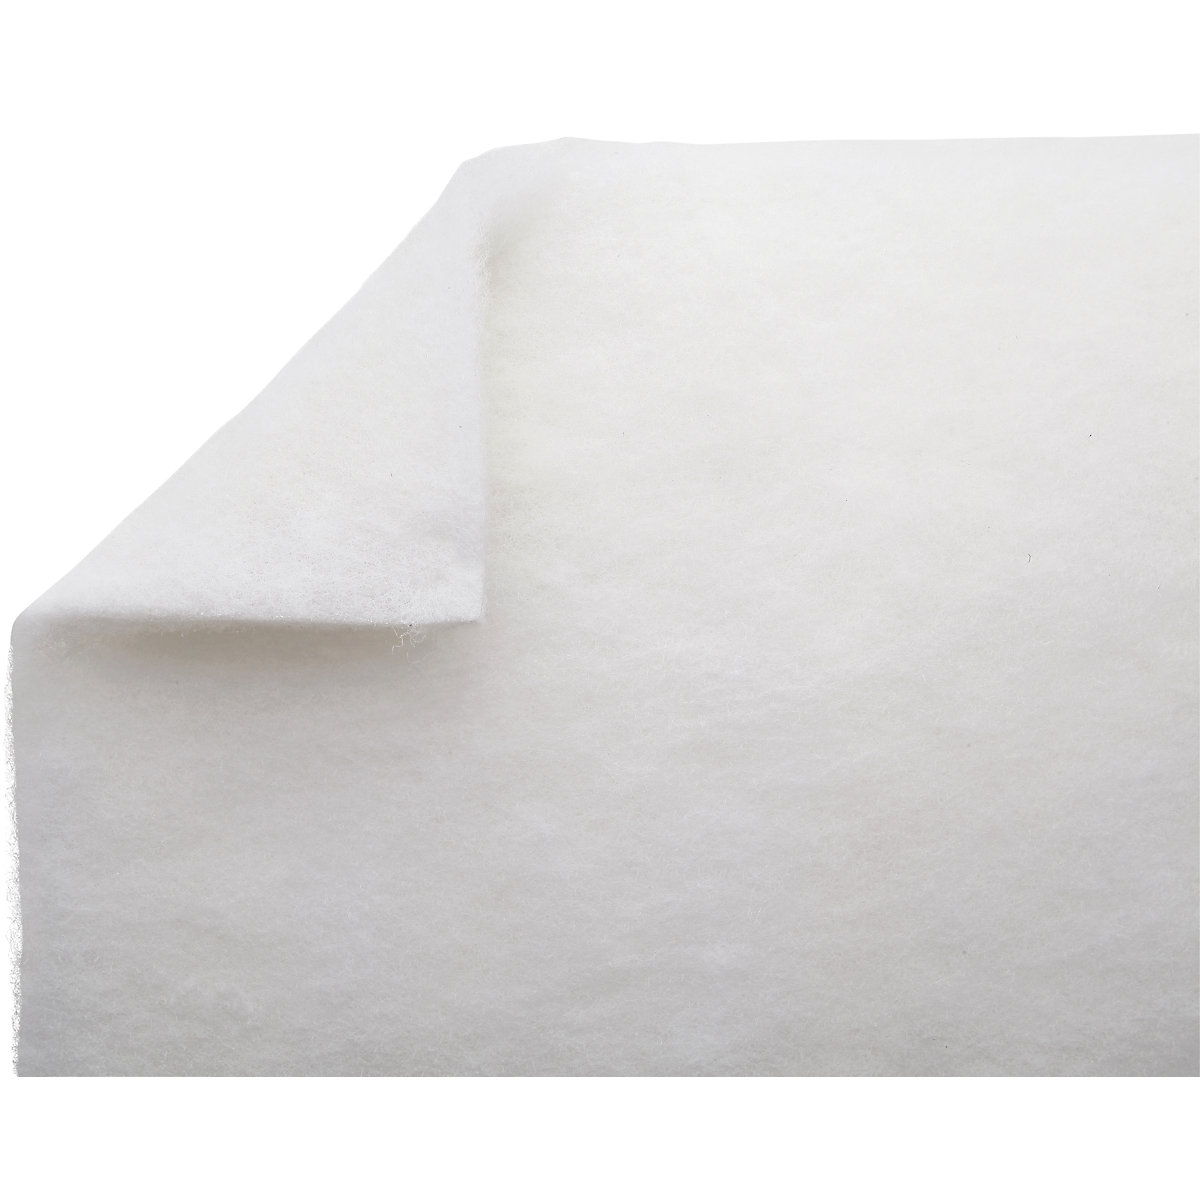 Heavy Fluids absorbent sheeting mat - PIG